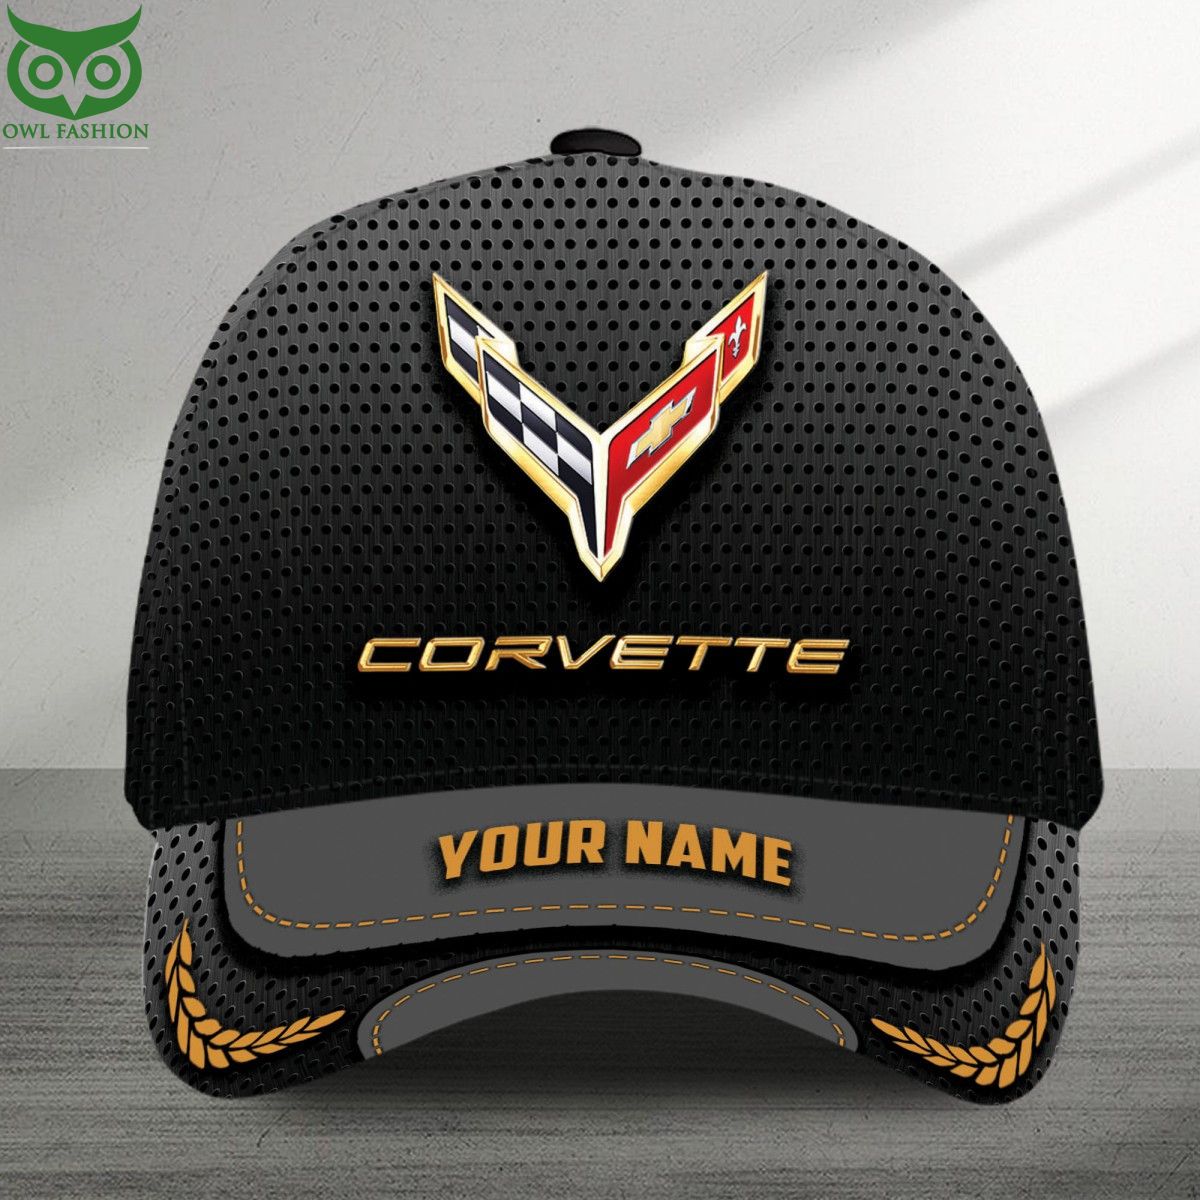 Chevrolet Corvette Luxury Car Brand Custom Classic Cap Coolosm